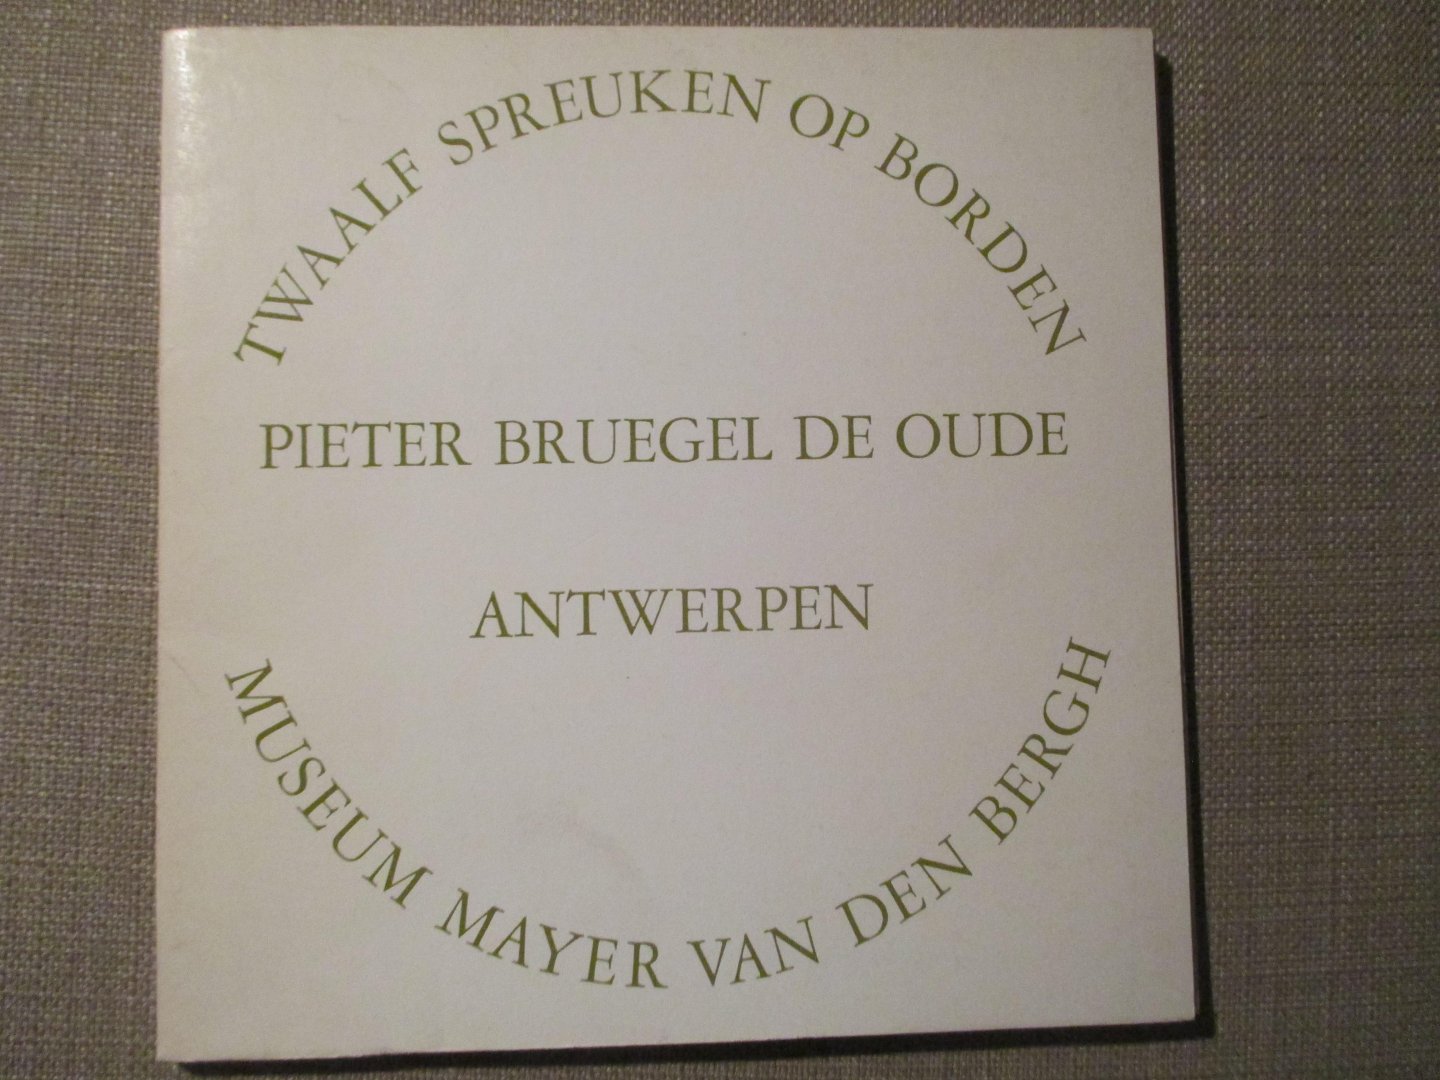  - Pieter Bruegel de Oude Twaalf spreuken op borden